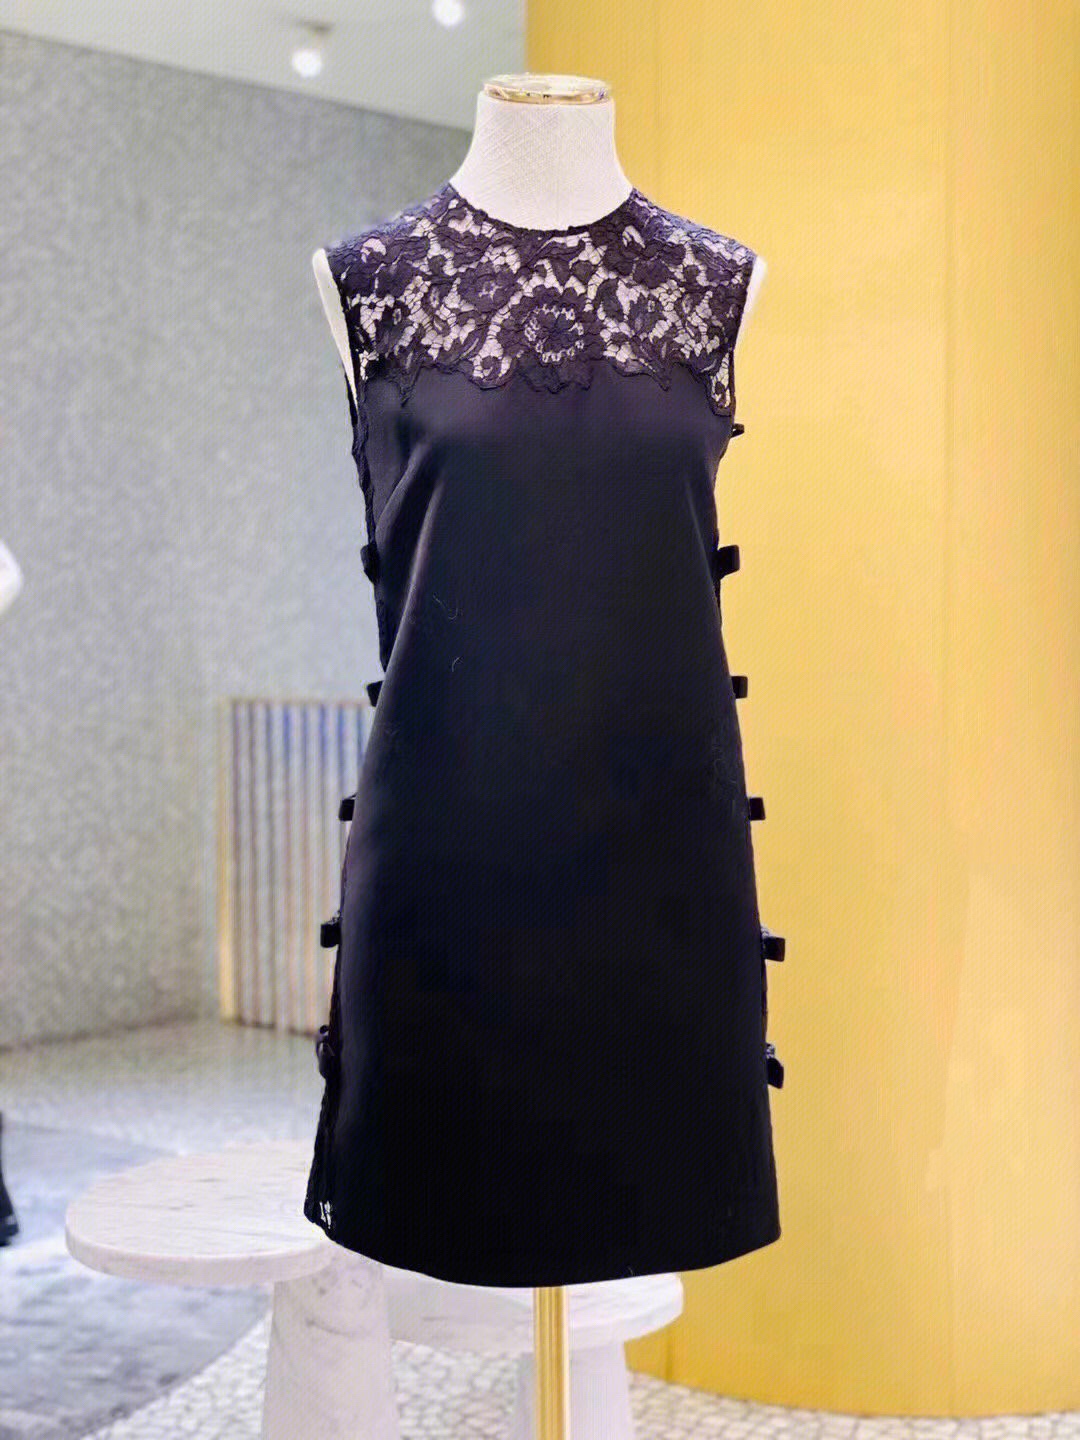 珍藏版新款丝羊毛经典蕾丝搭配侧边蝴蝶结设计黑色连衣裙无袖